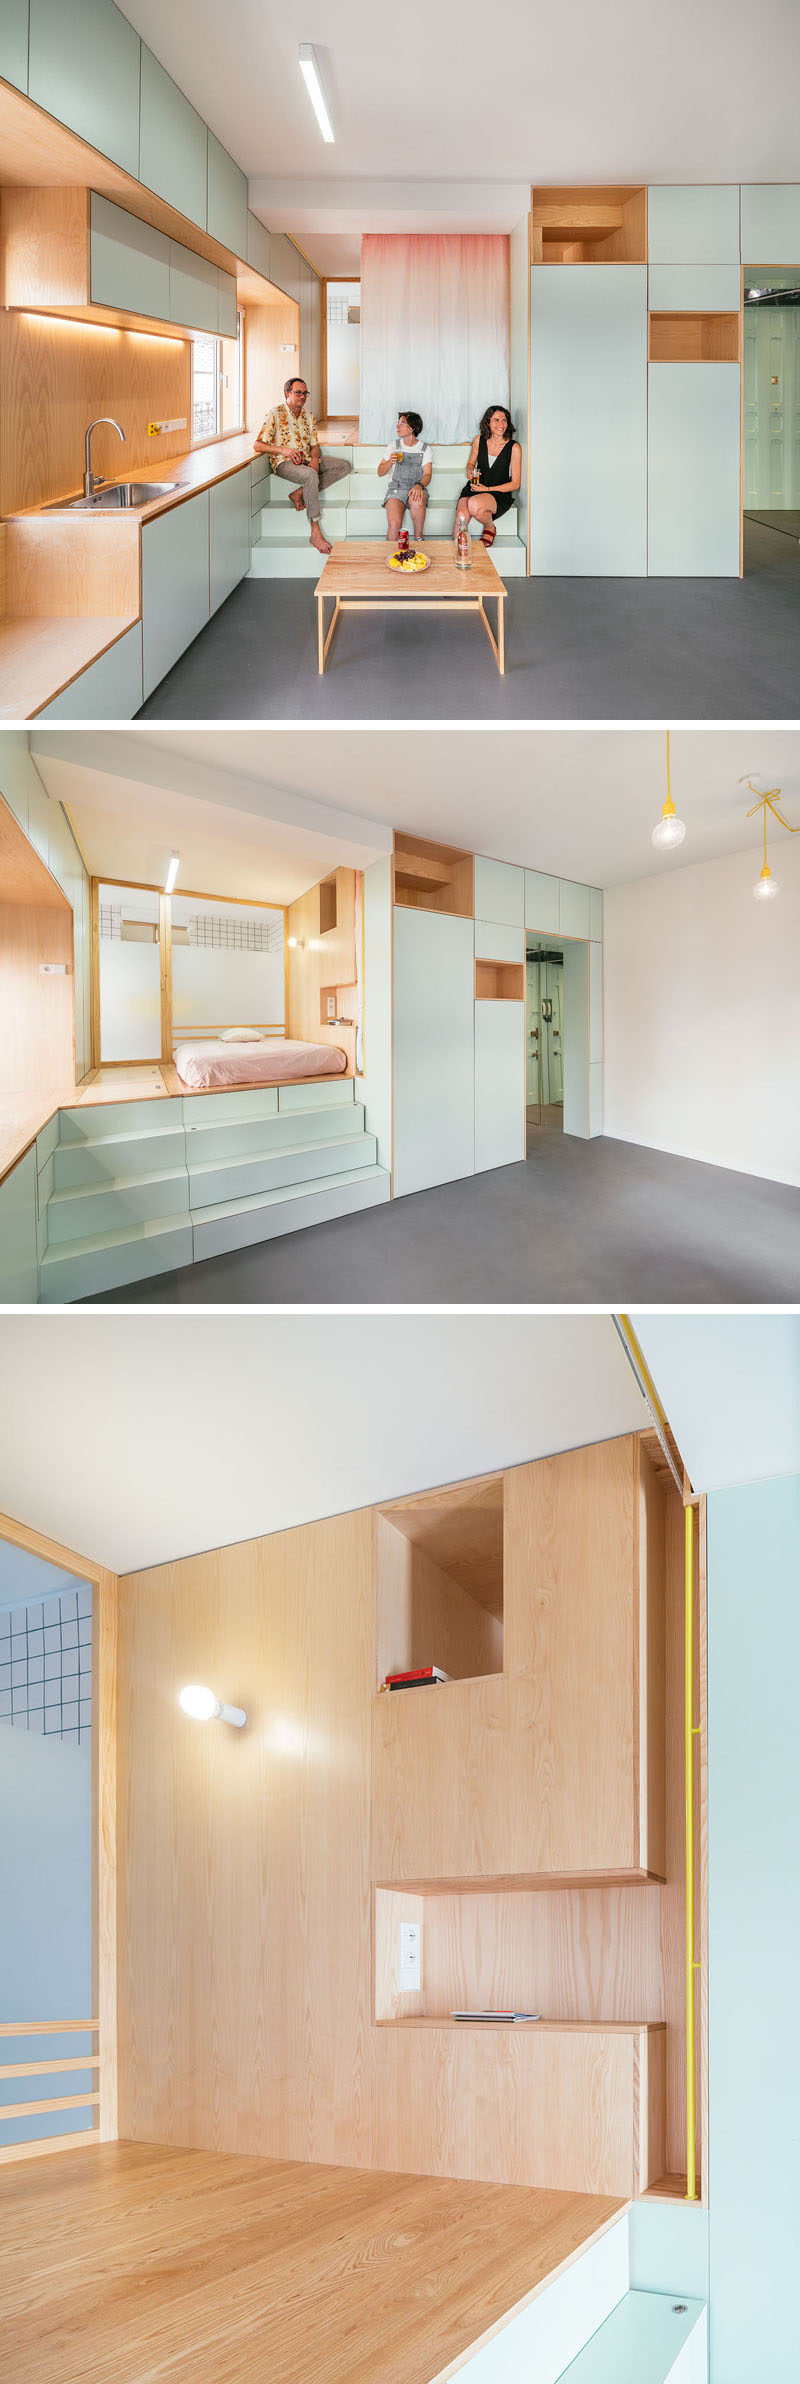 Trong căn hộ hiện đại này, một tấm rèm đầy màu sắc đơn giản mang lại sự riêng tư cho phòng ngủ, trong khi giá đỡ bằng gỗ đóng vai trò như một chiếc bàn cạnh giường ngủ.  #SmallApartment #InteriorDesign